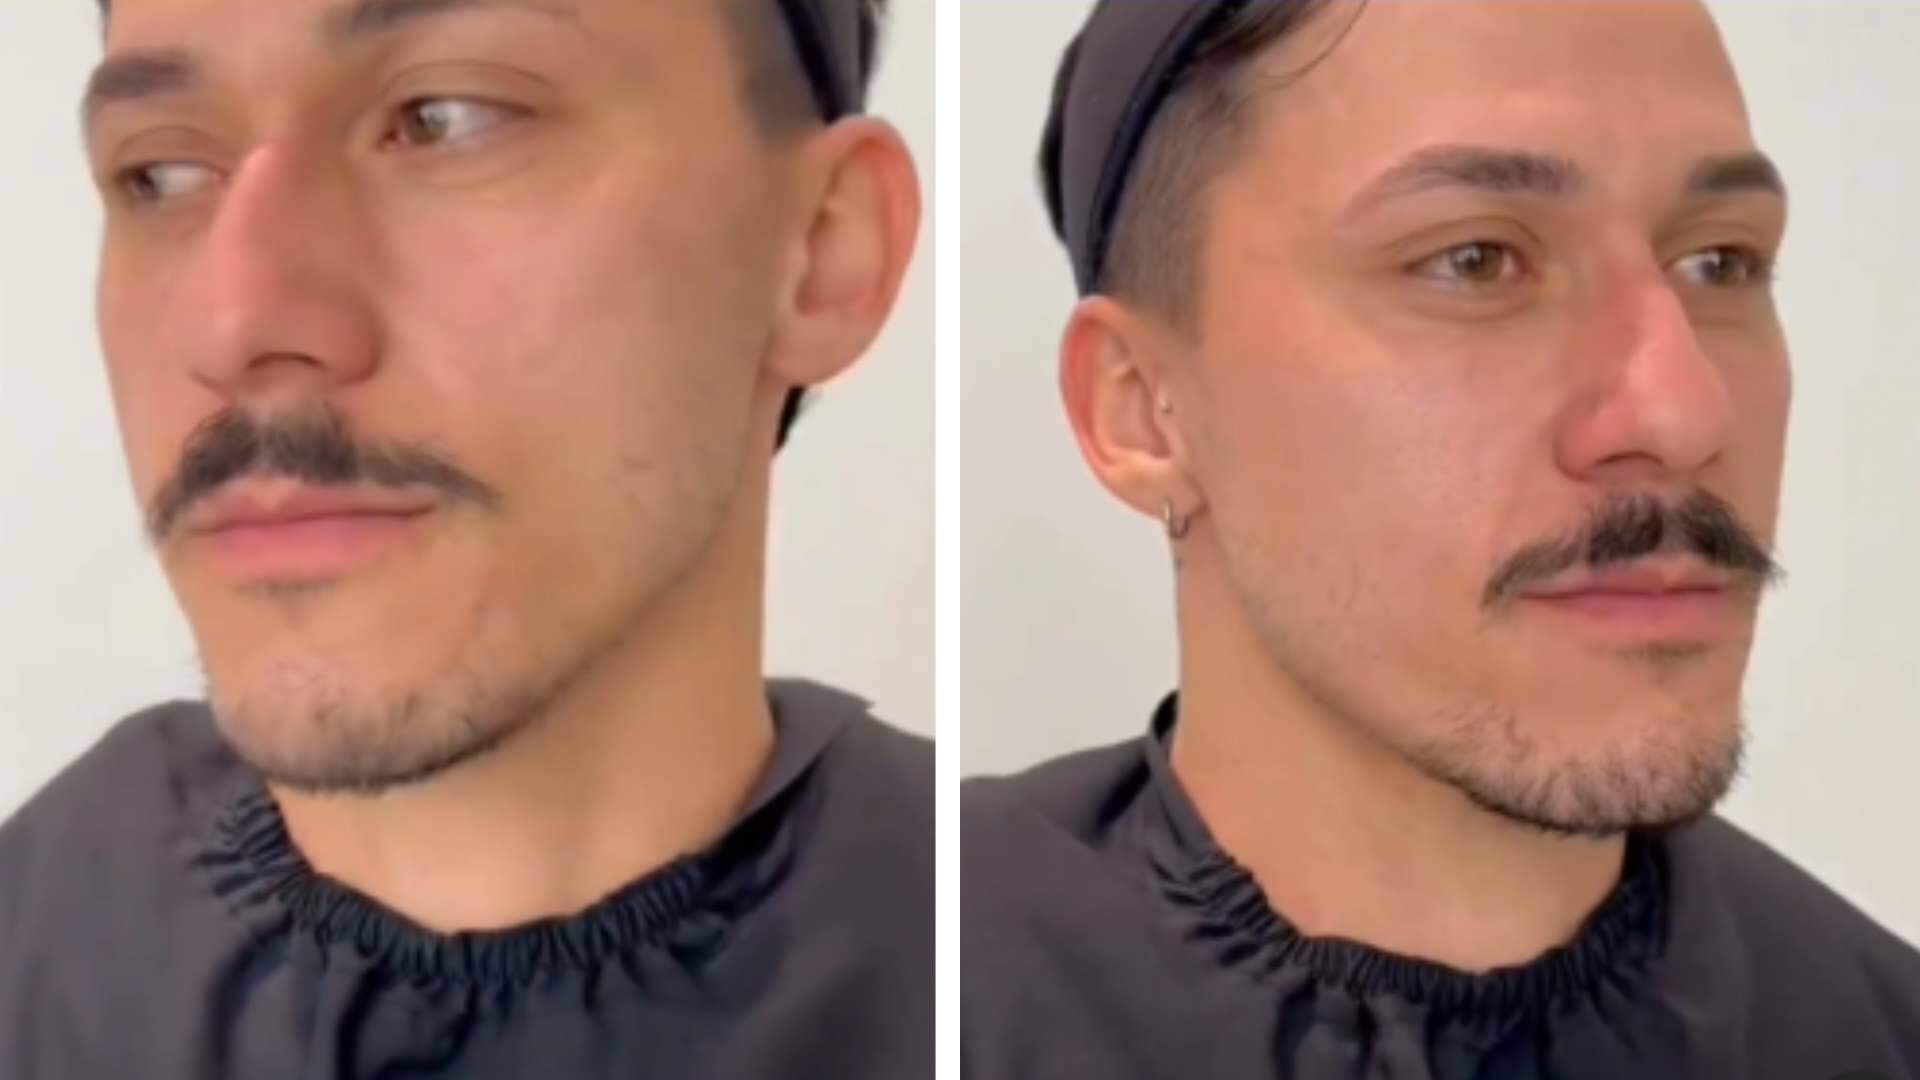 Homem mostra resultado chocante do seu transplante de barba e deixa internautas boquiabertos - Metropolitana FM